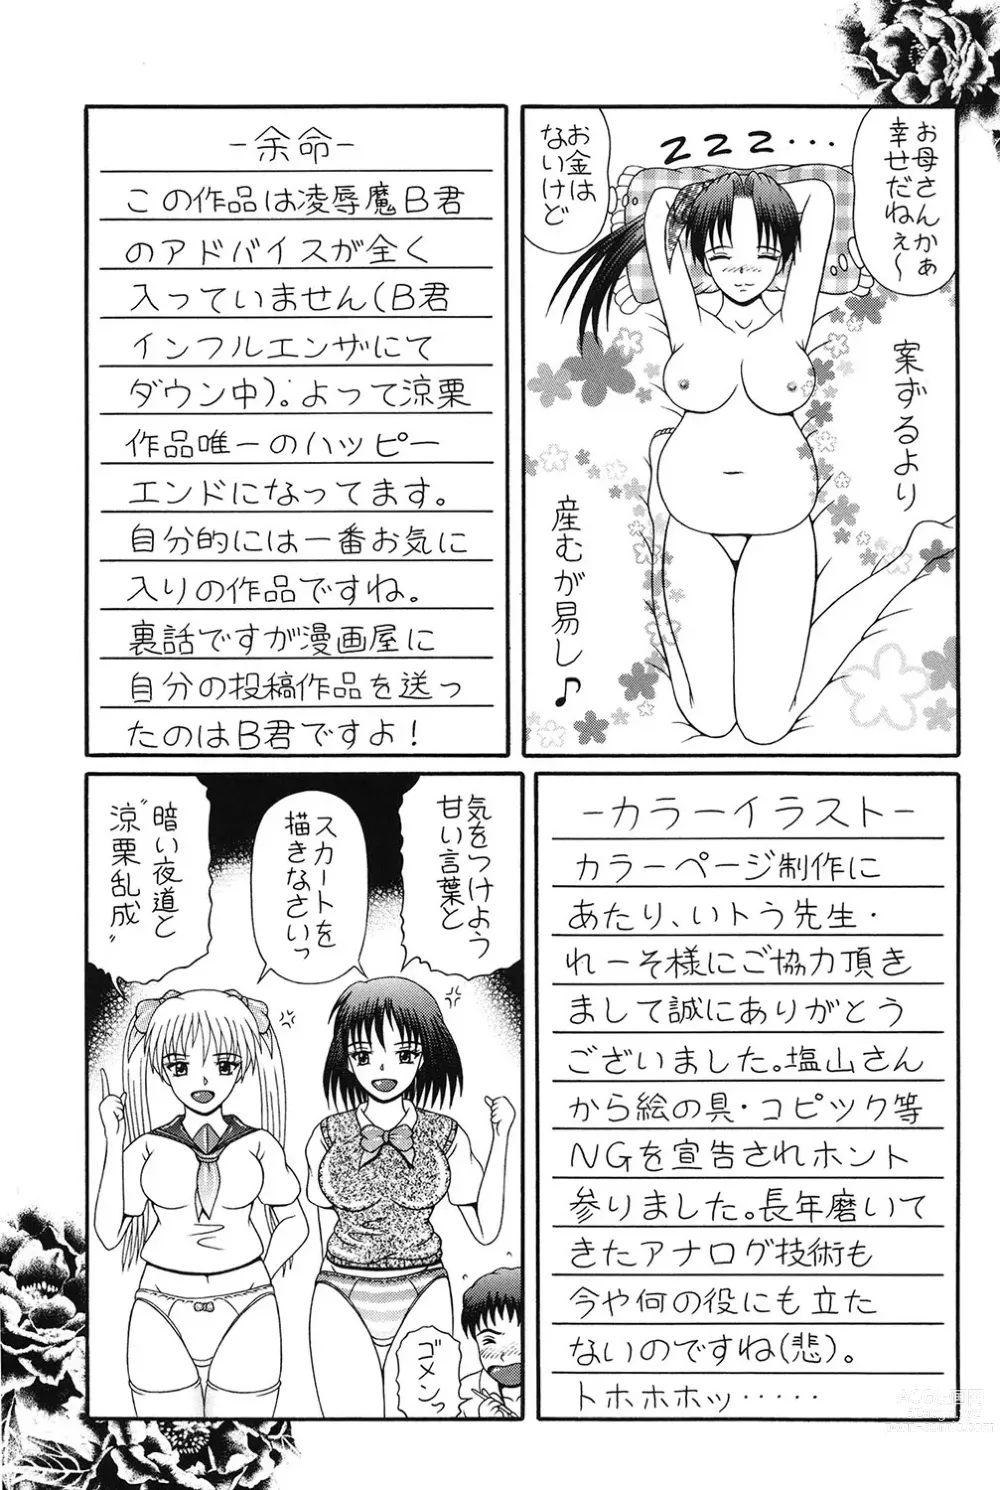 Page 146 of manga Todokanai Zekkyou - Nicht Erreichen Schreien